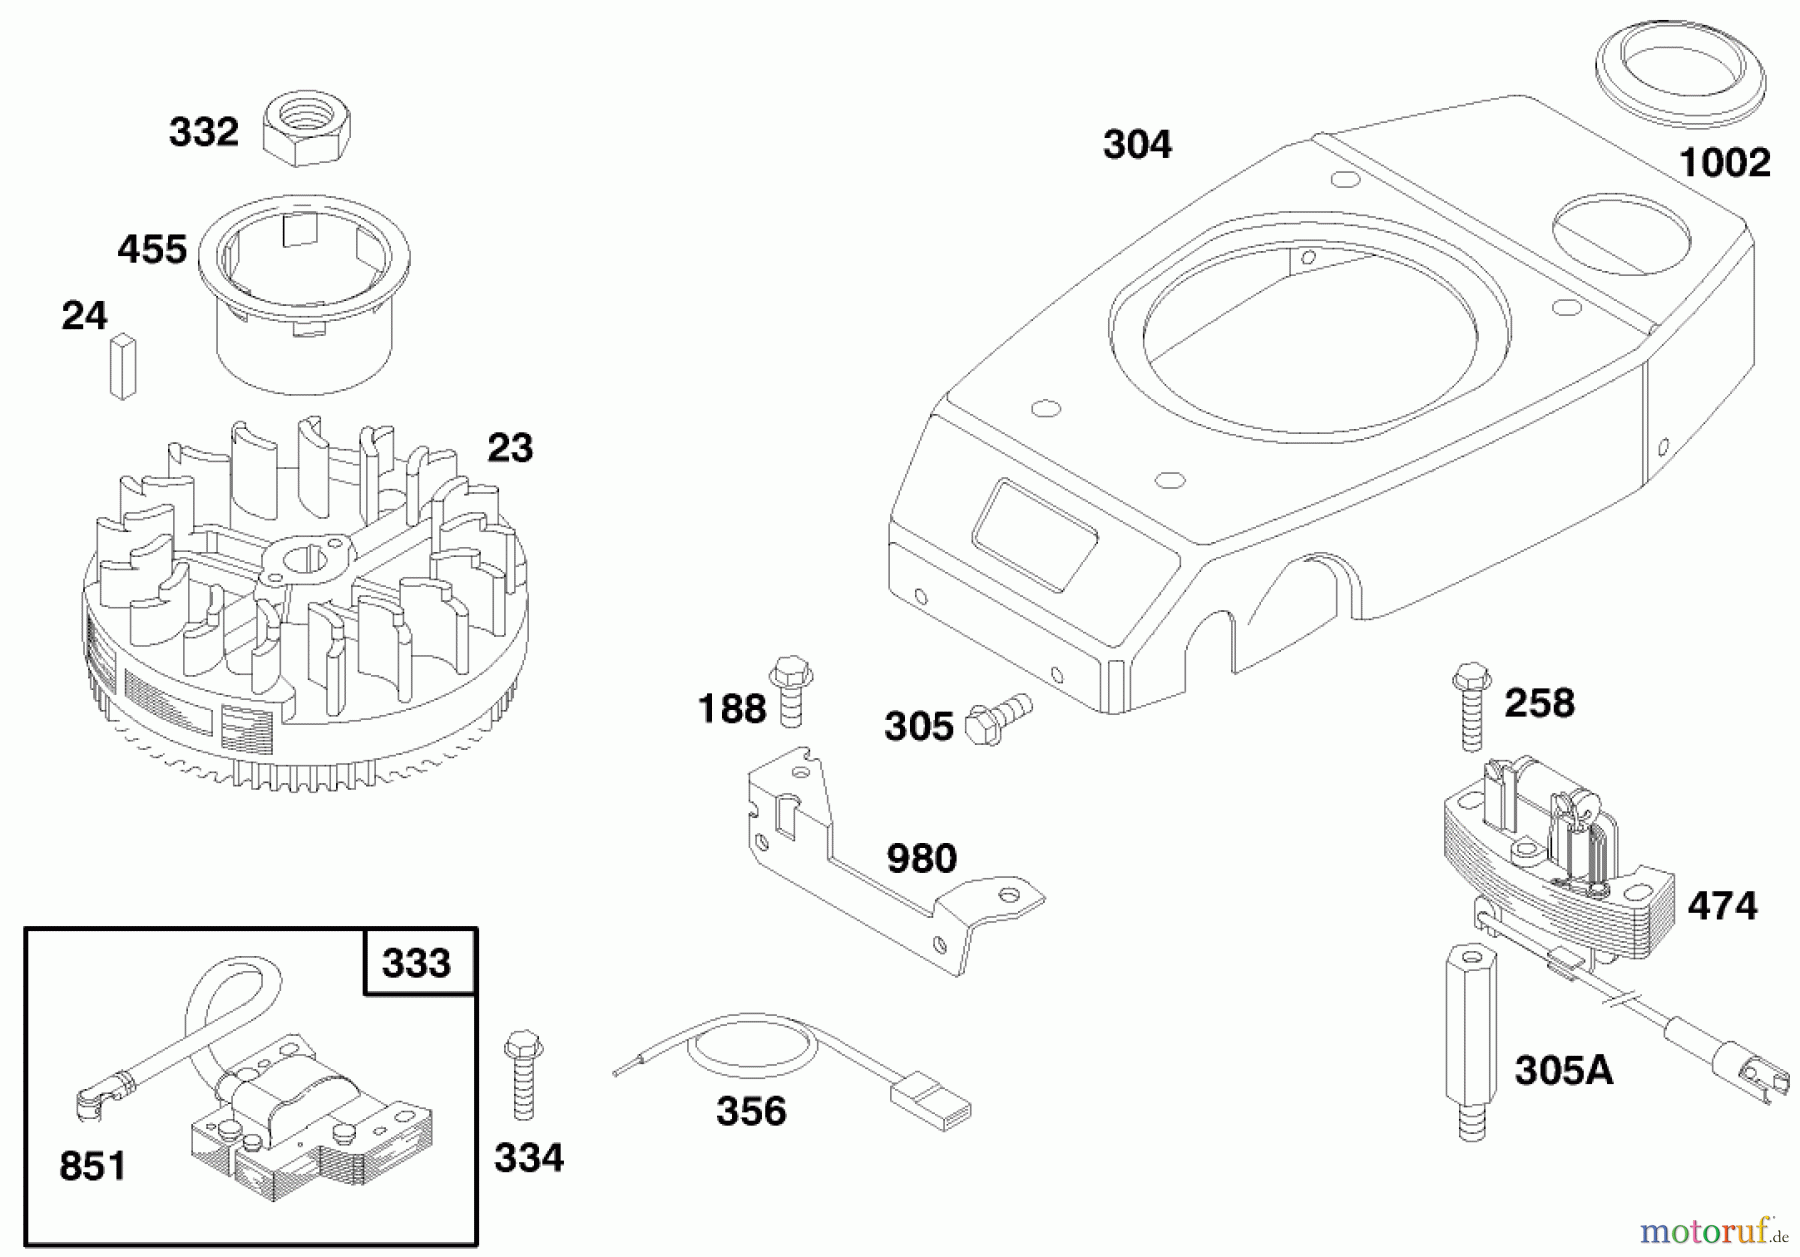  Toro Neu Mowers, Walk-Behind Seite 1 20475 - Toro Lawnmower, 1996 (6900001-6999999) ENGINE GTS 150 (MODEL NO. 20476 ONLY) #7